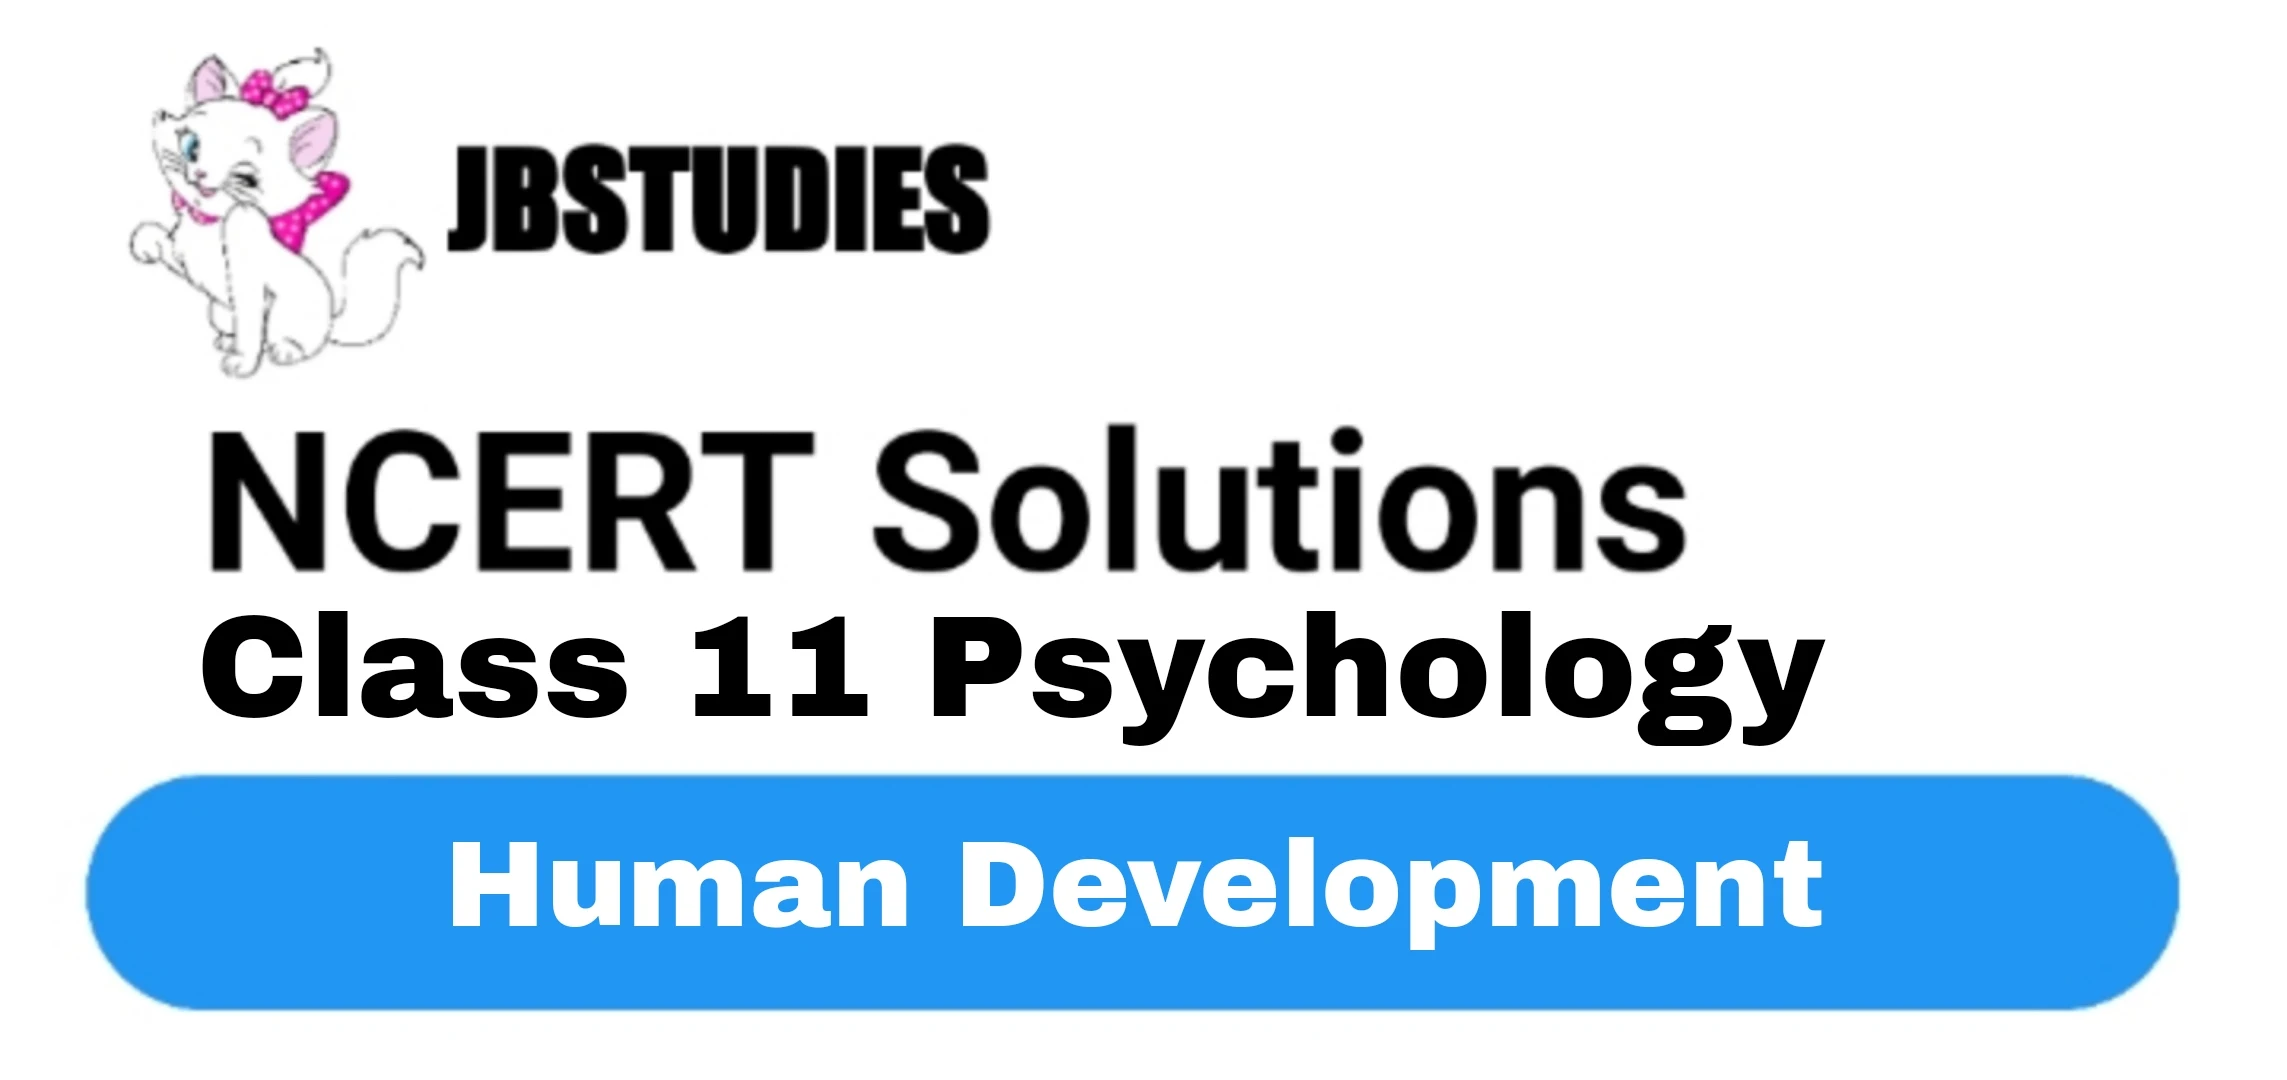 Solutions Class 11 Psychology Chapter -4 (Human Development)